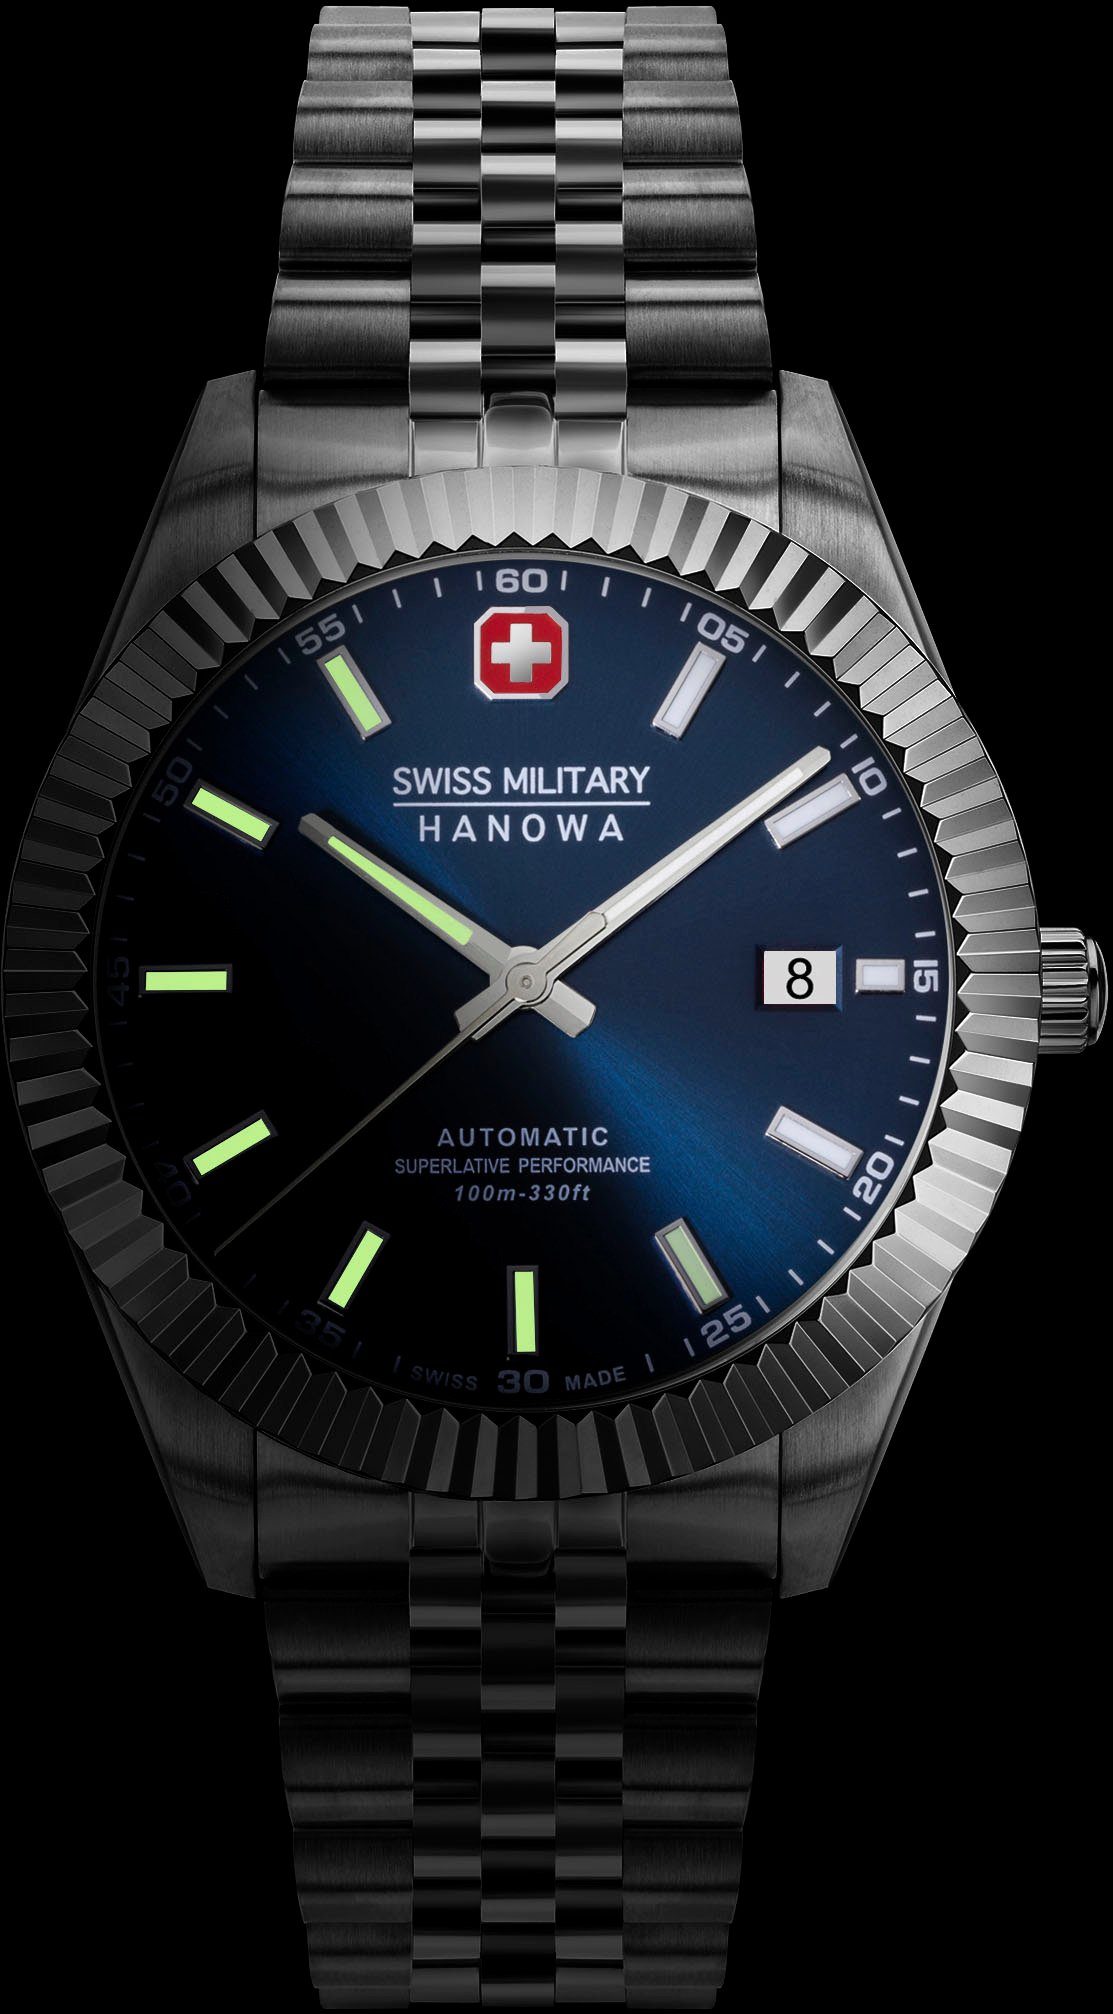 Swiss Schweizer Uhr SMWGL0002102 Blau Hanowa AUTOMATIC DILIGENTER, Military